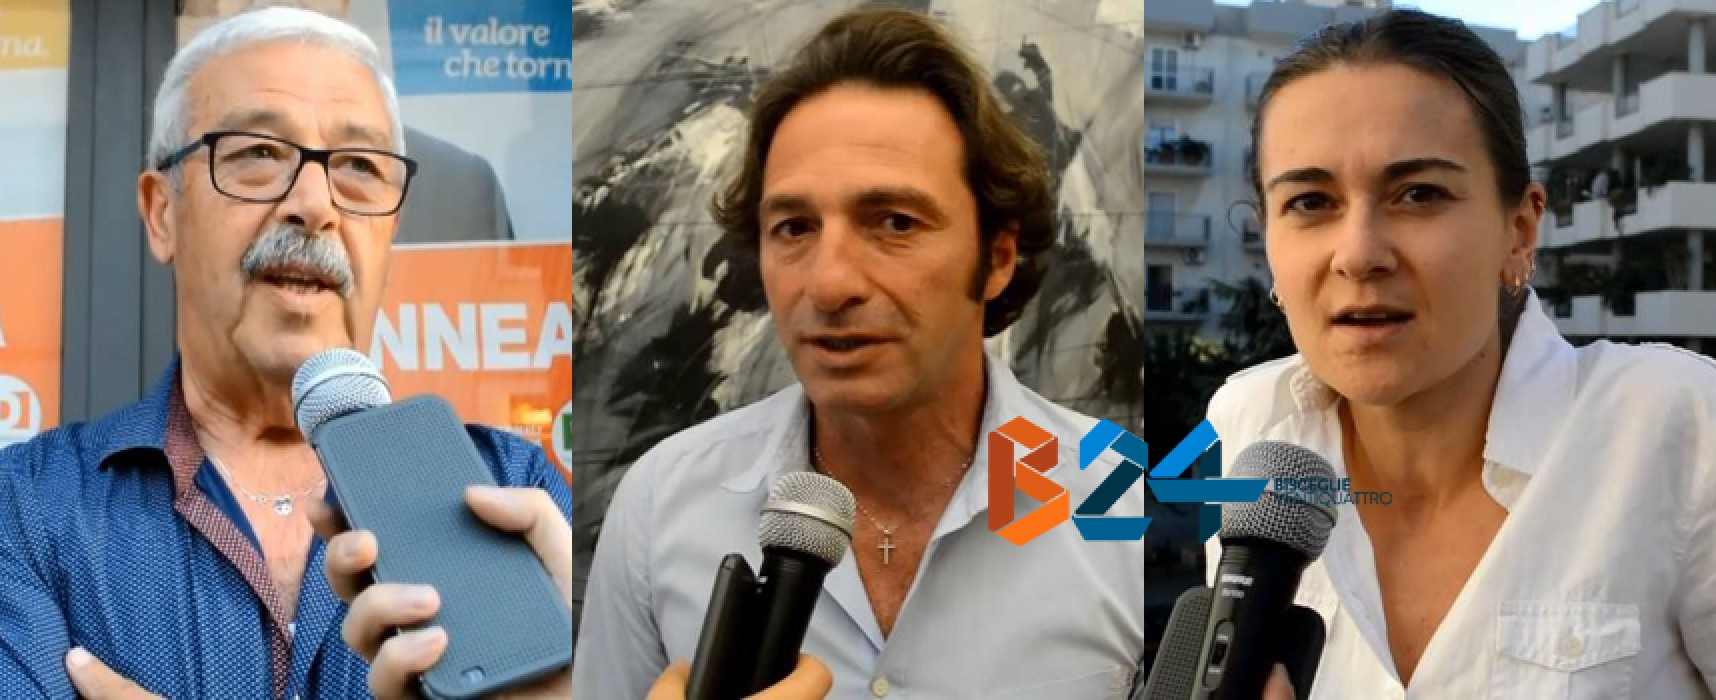 Analisi del voto, interviste a Mastrapasqua, Casella e Valente/VIDEO